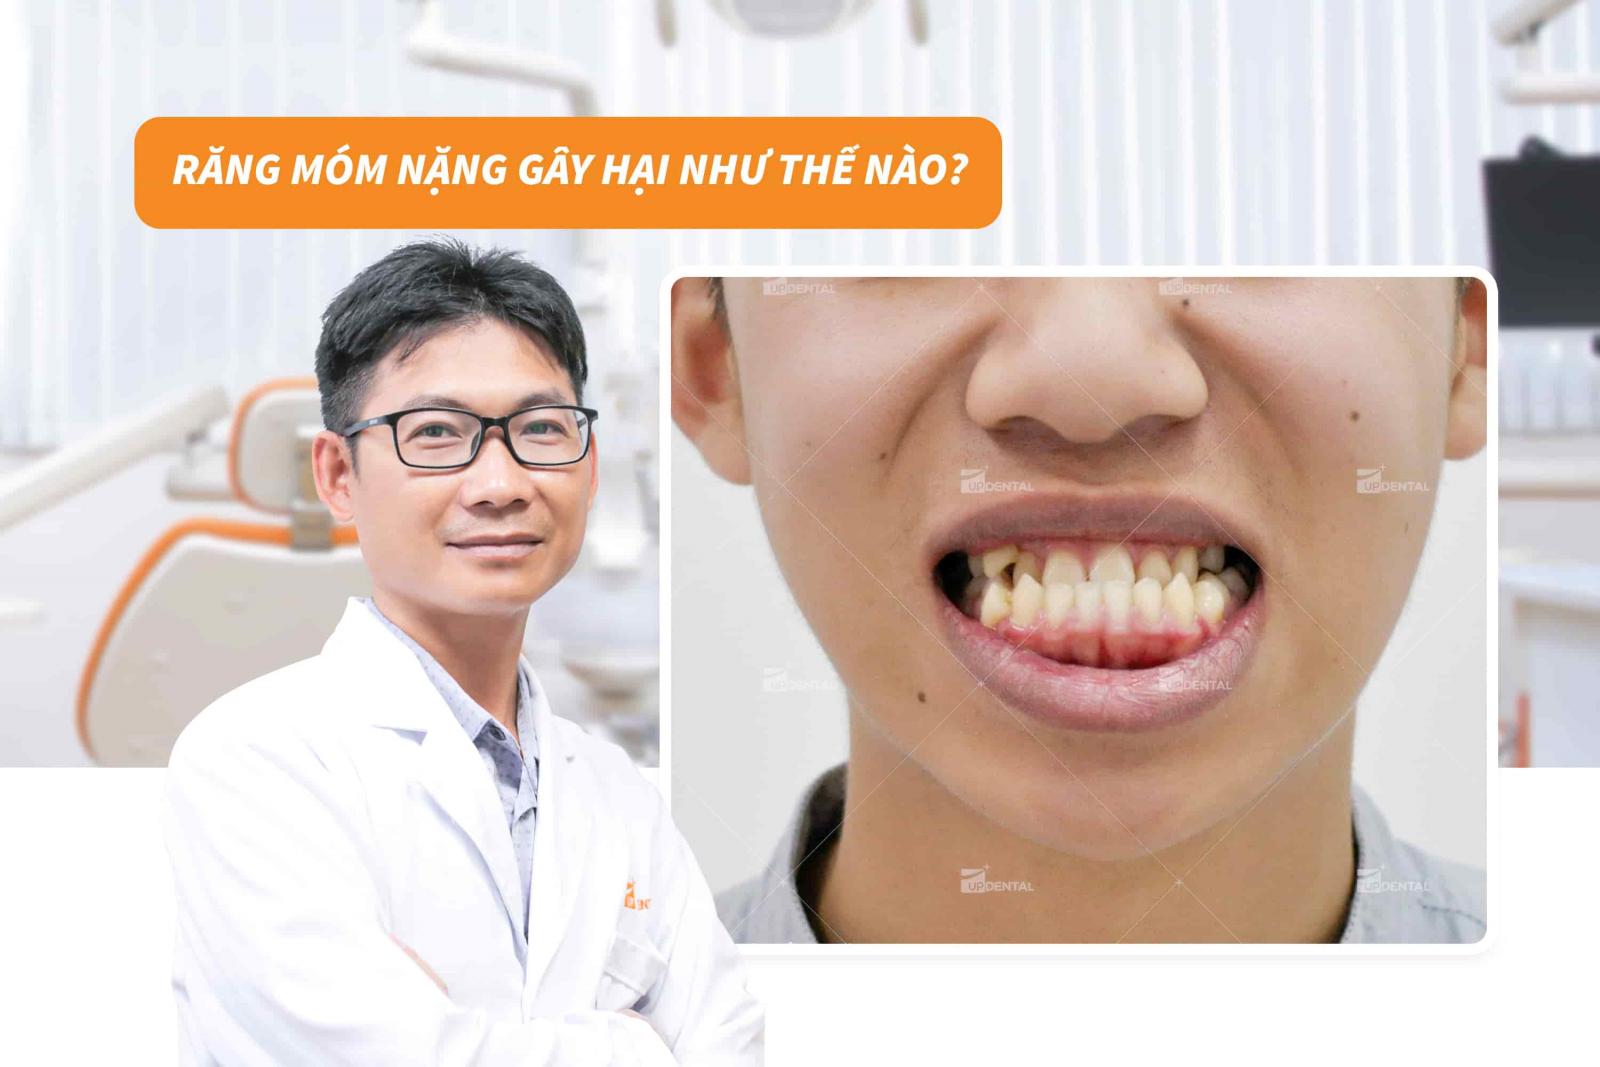 Răng móm nặng gây hại như thế nào?